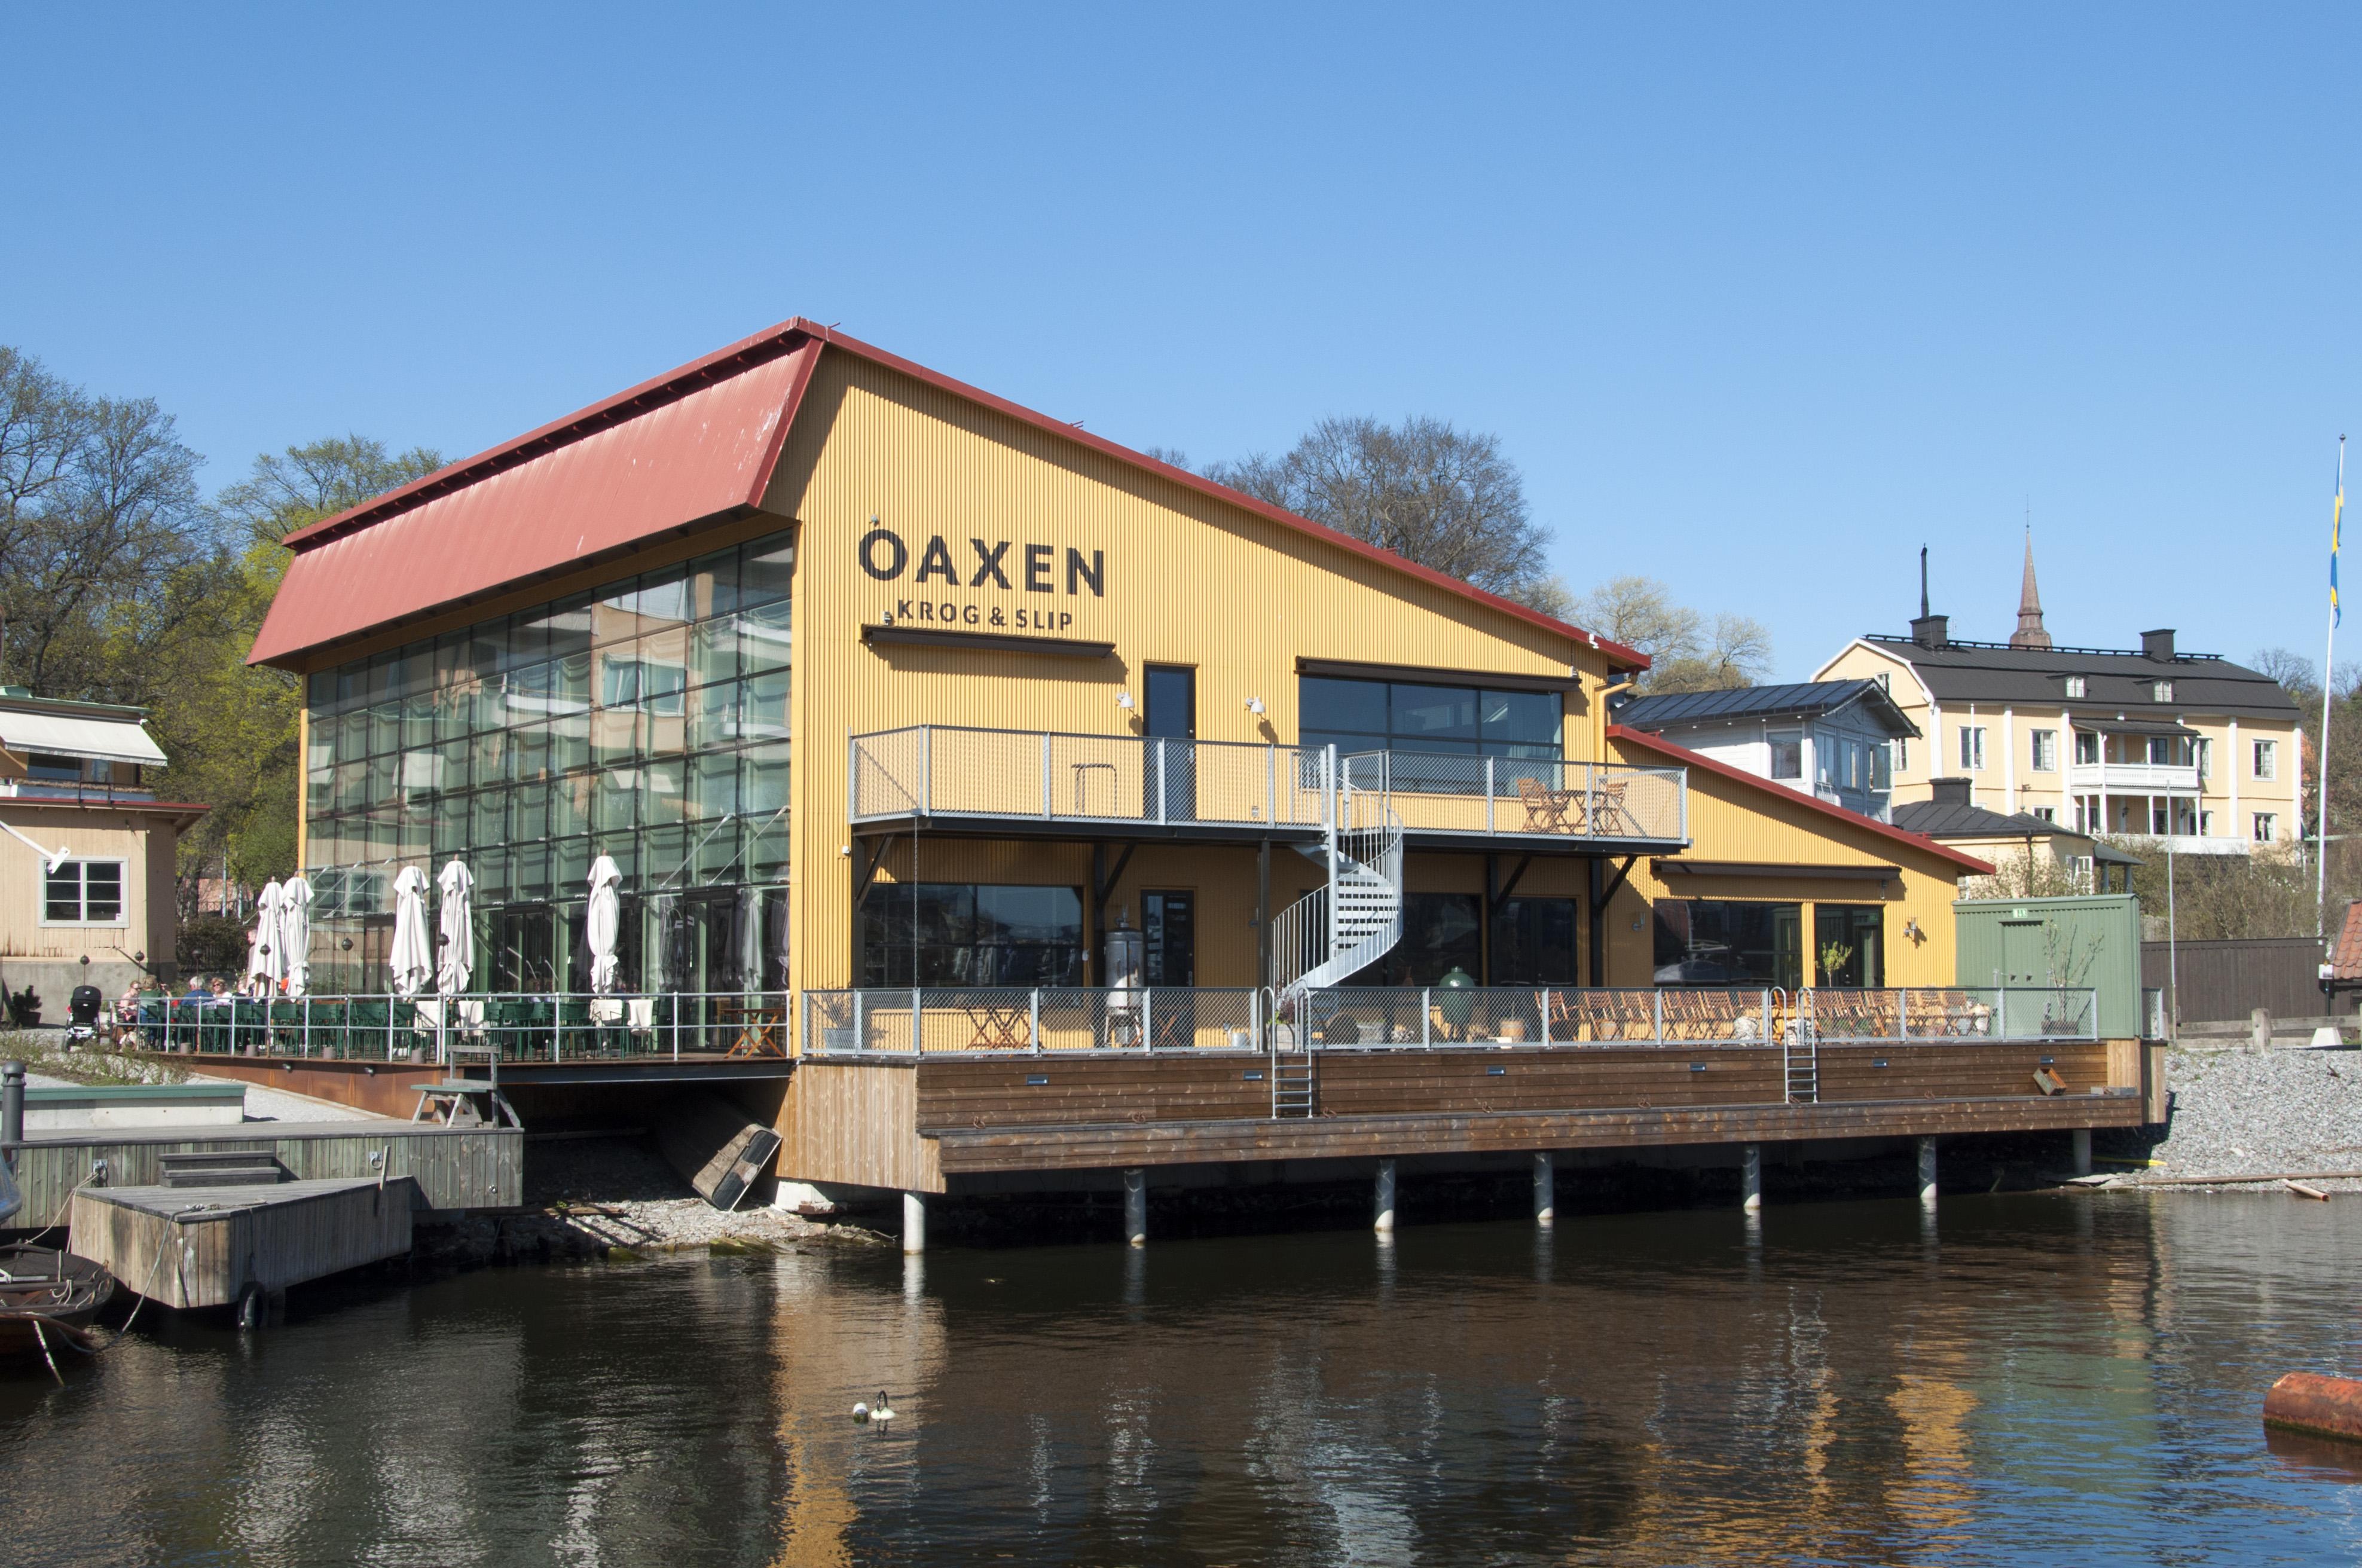 Ресторан Oaxen Krog & Slip